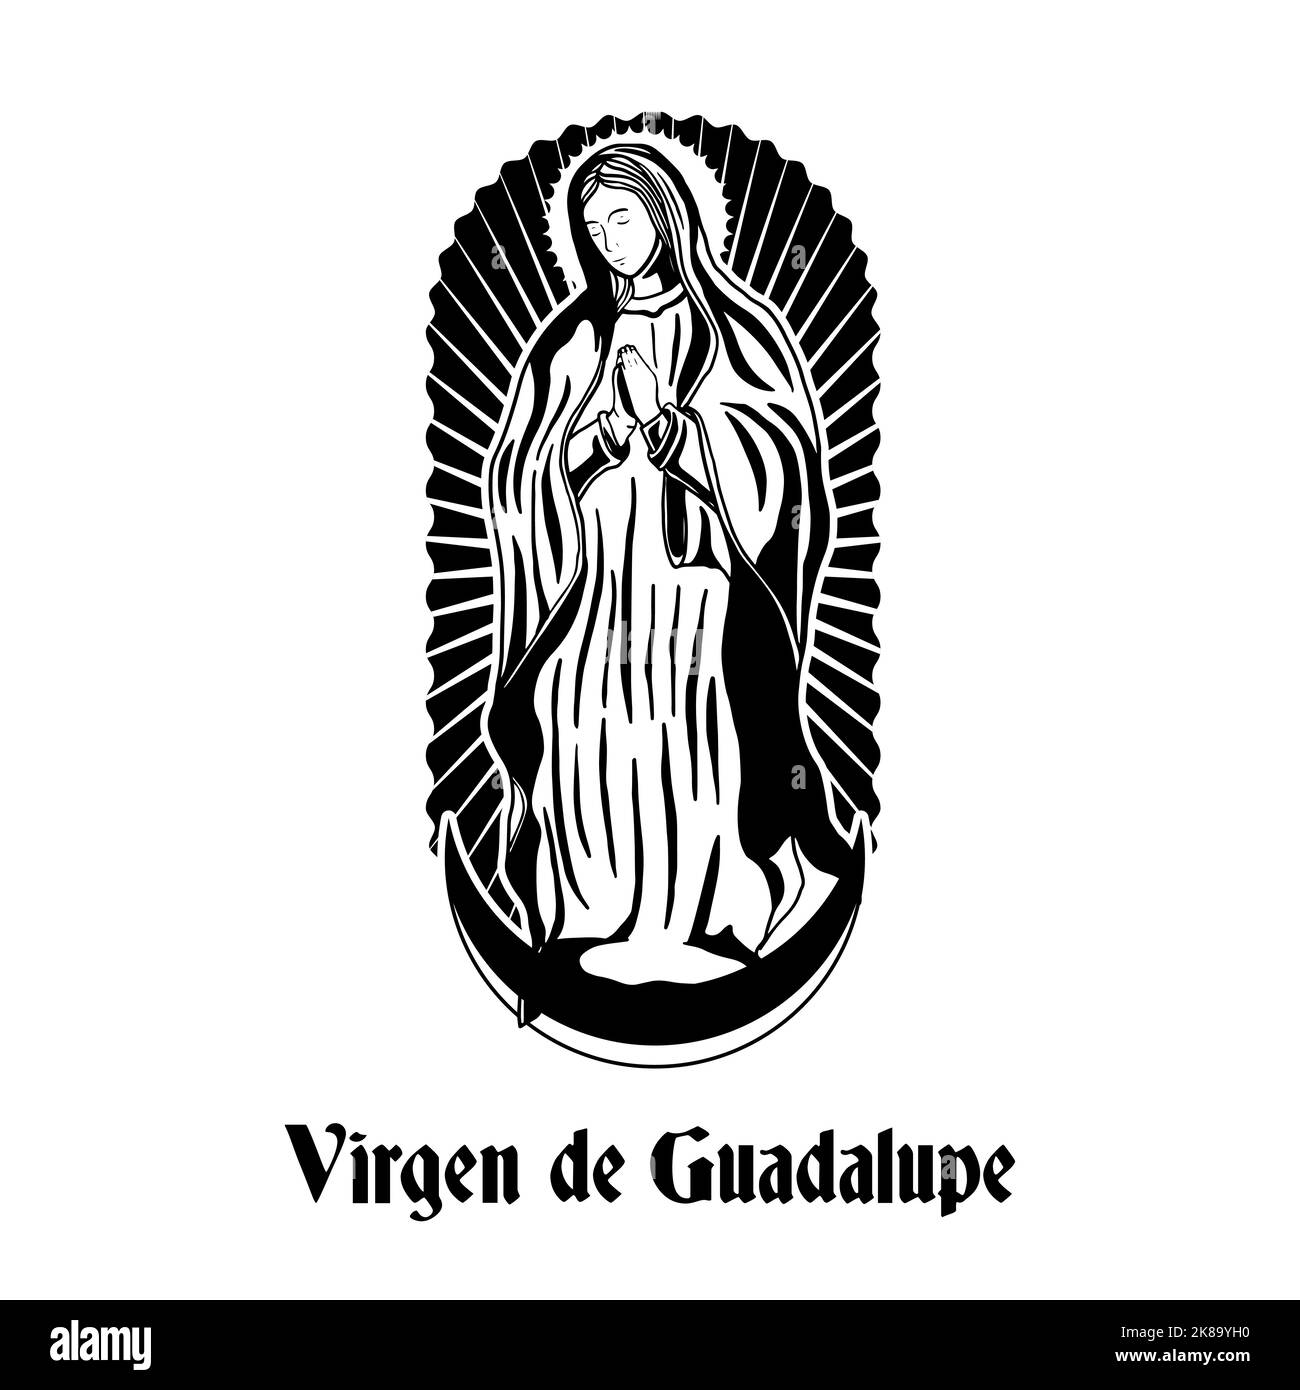 illustration de virgen de guadalupe dessinée à la main Illustration de Vecteur